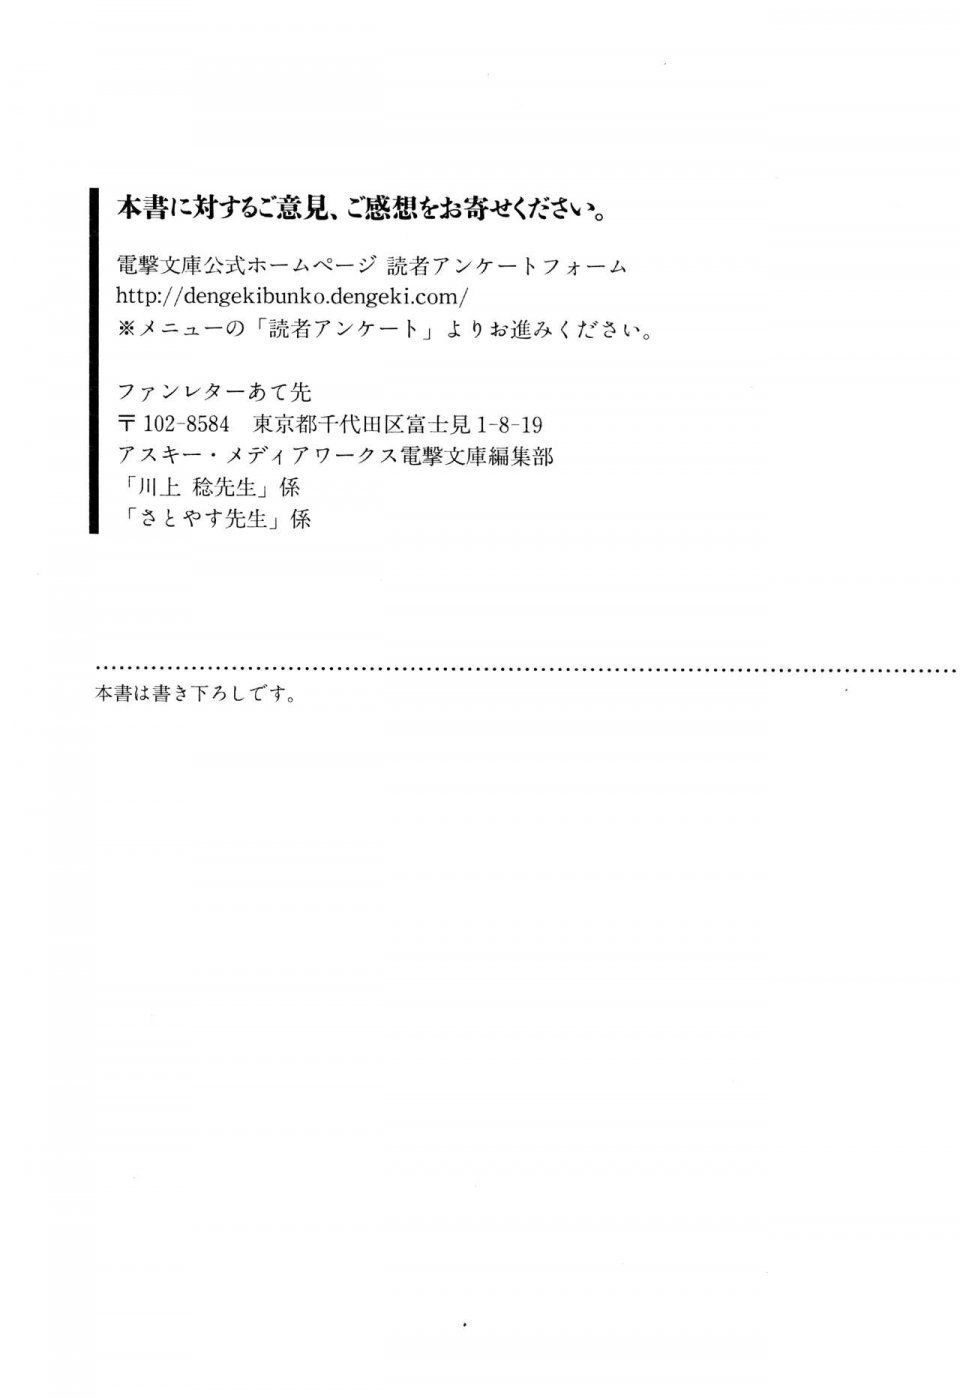 Kyoukai Senjou no Horizon LN Vol 13(6A) - Photo #709